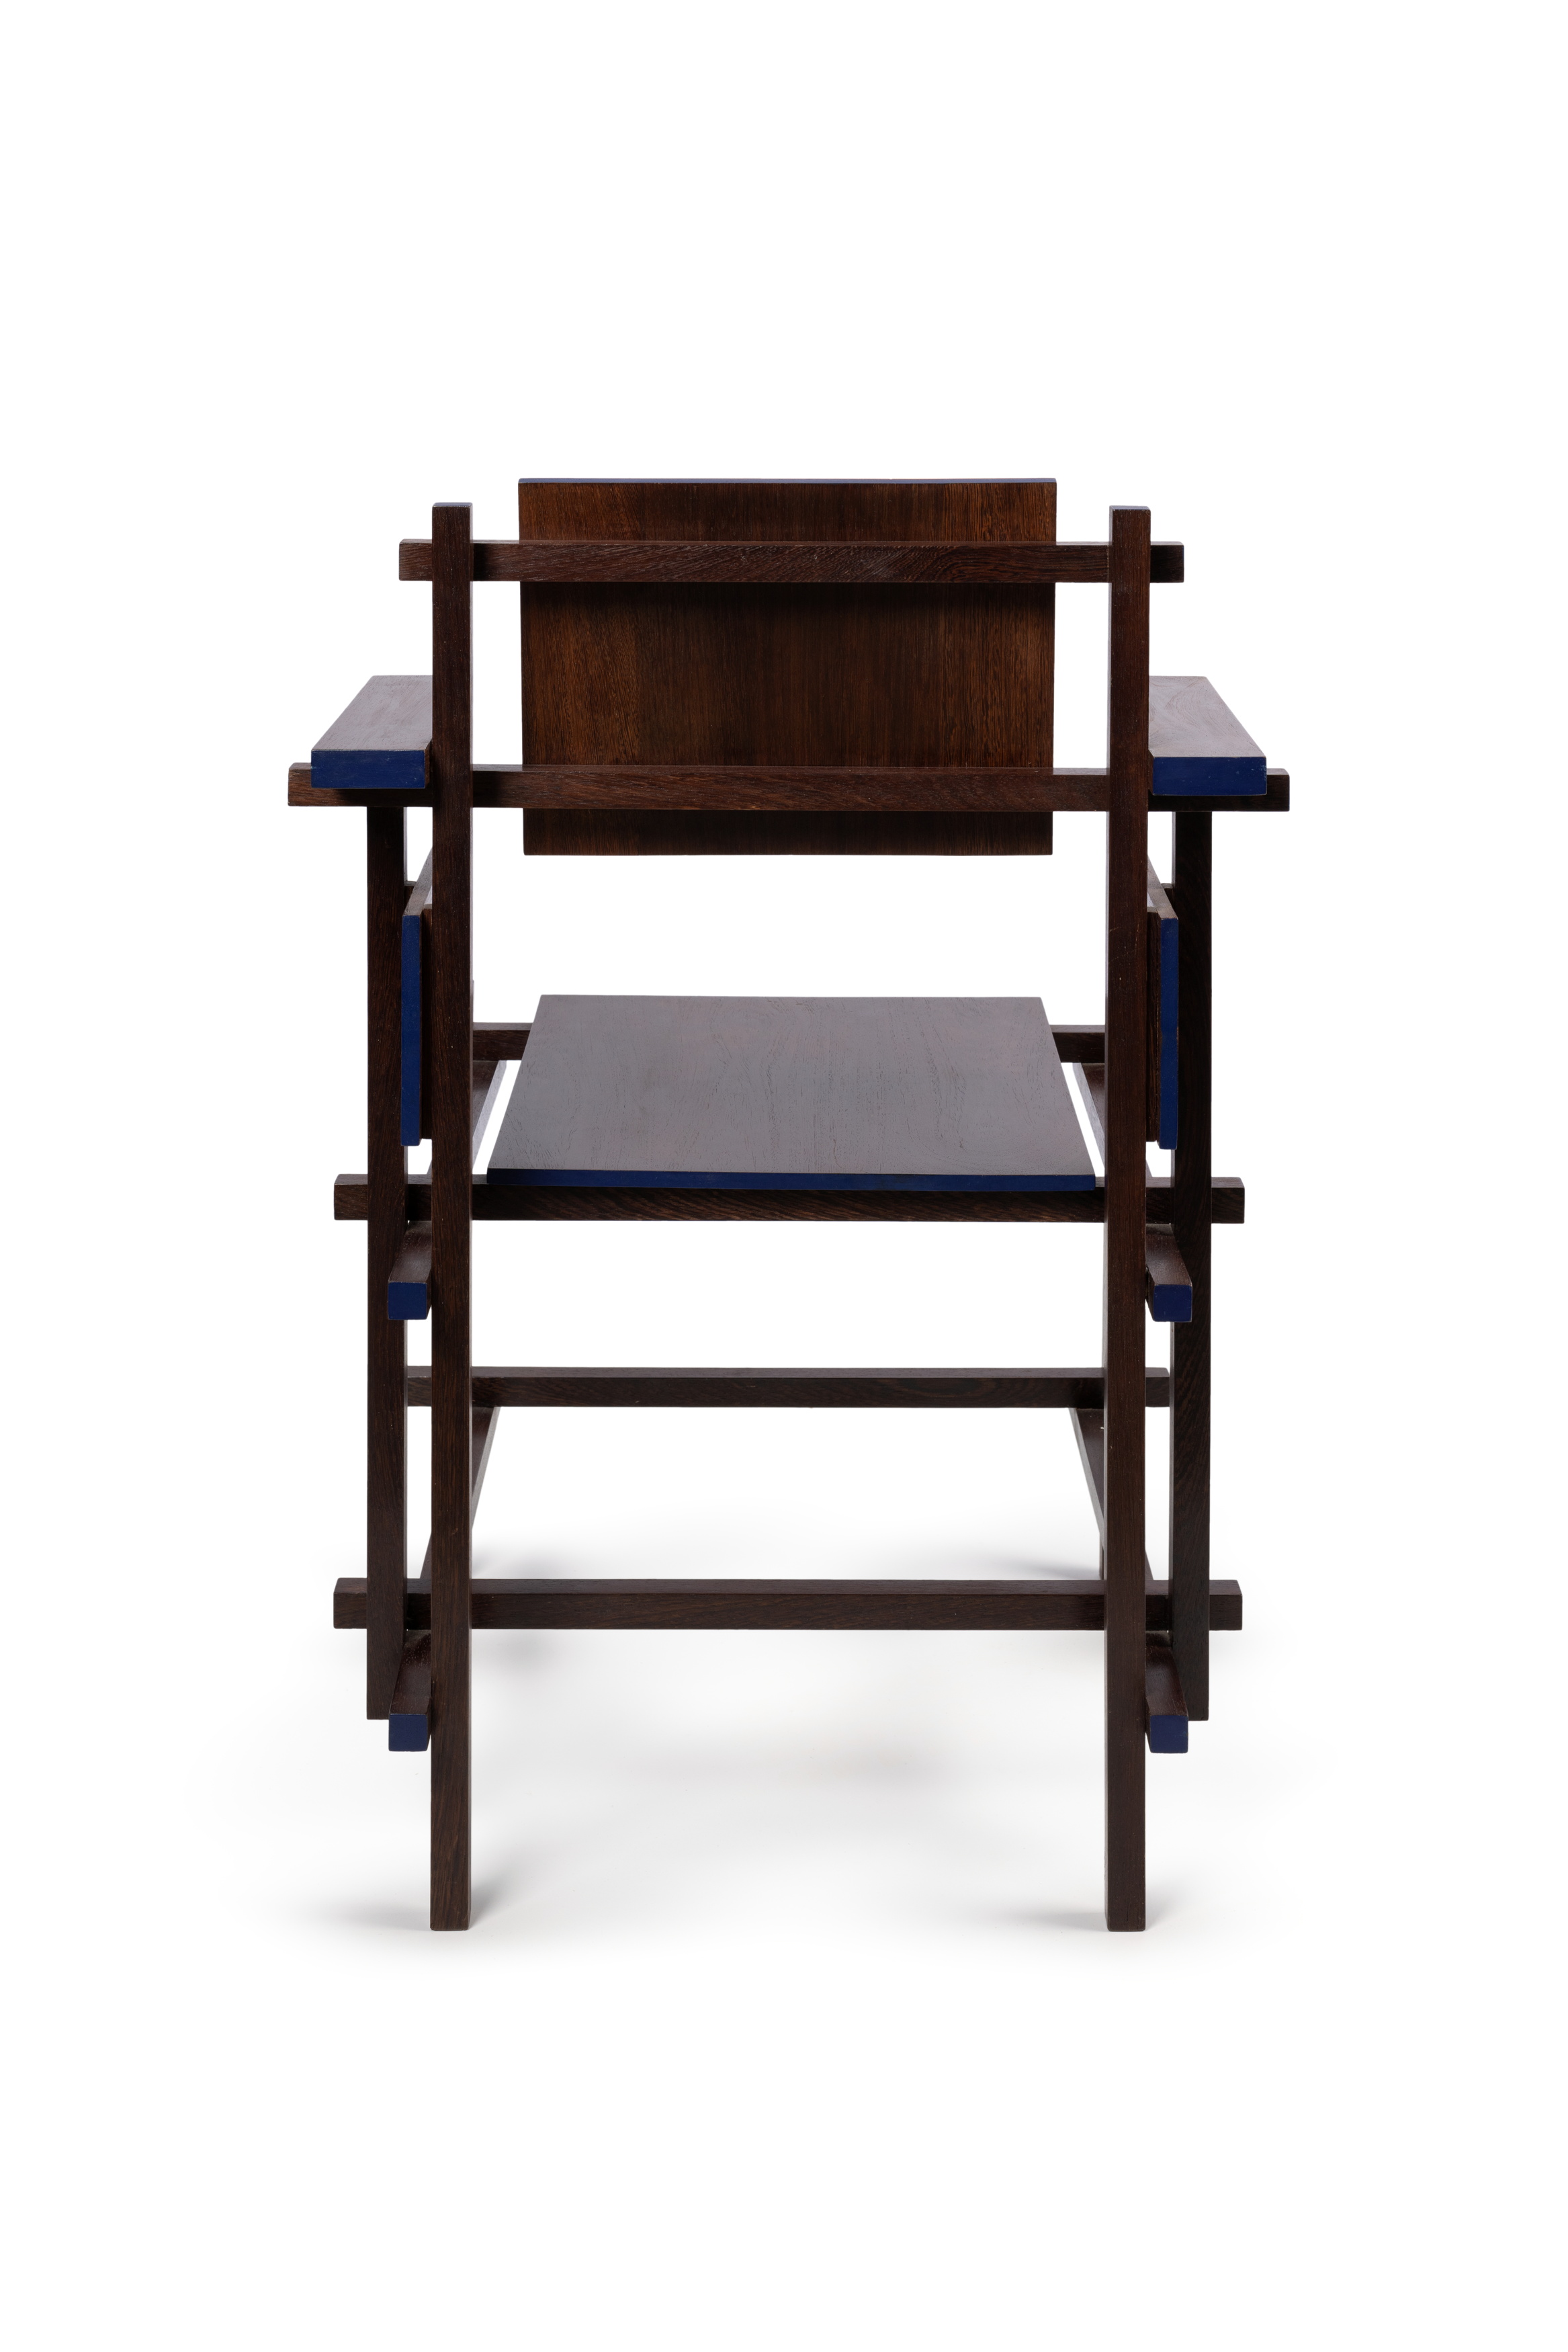 Armchair (hogestoel) designed by Gerrit Rietveld